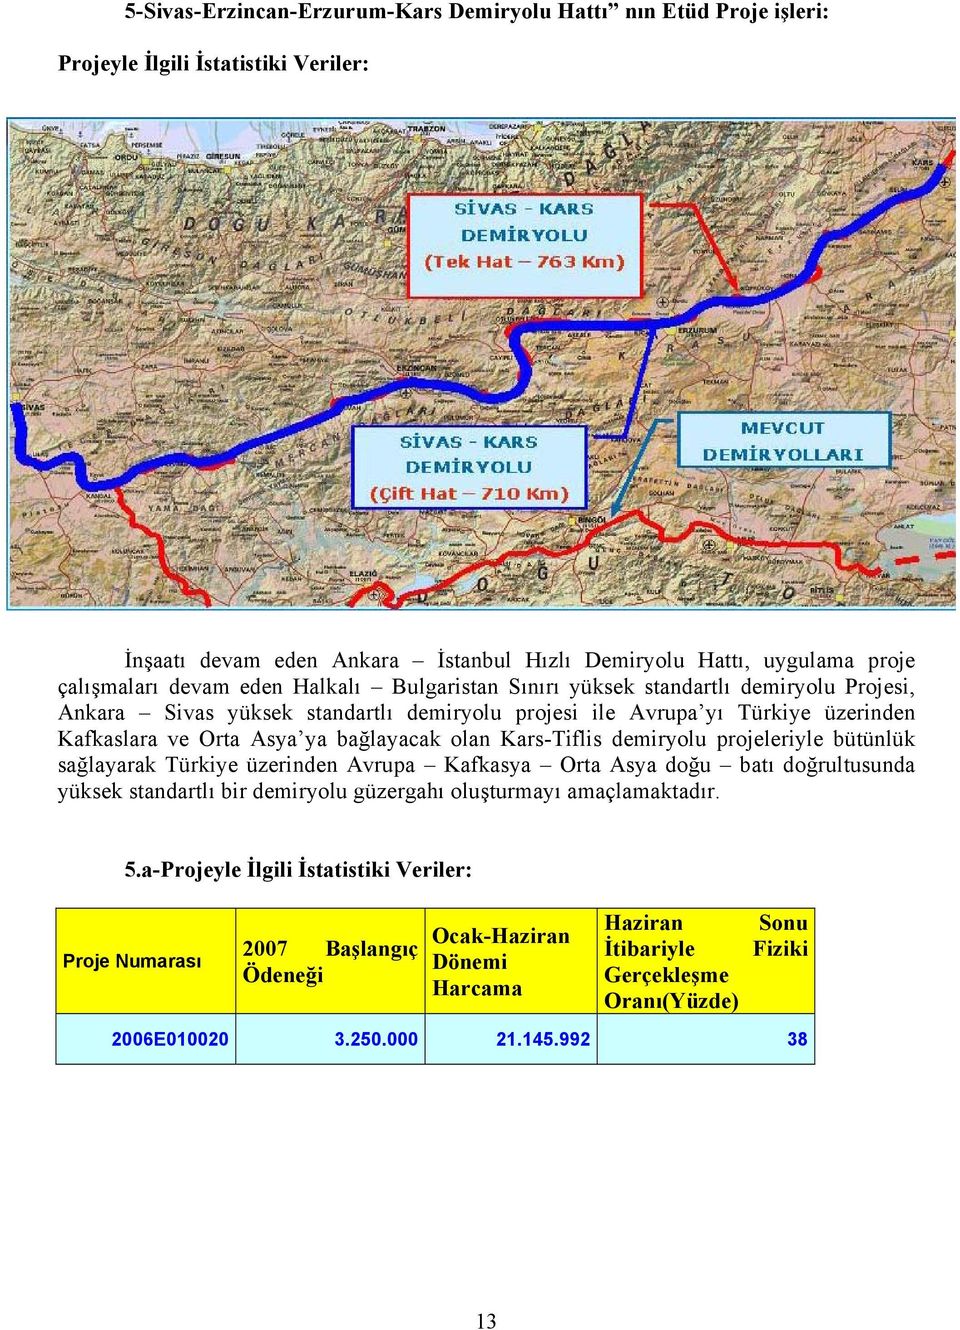 Orta Asya ya bağlayacak olan Kars-Tiflis demiryolu projeleriyle bütünlük sağlayarak Türkiye üzerinden Avrupa Kafkasya Orta Asya doğu batı doğrultusunda yüksek